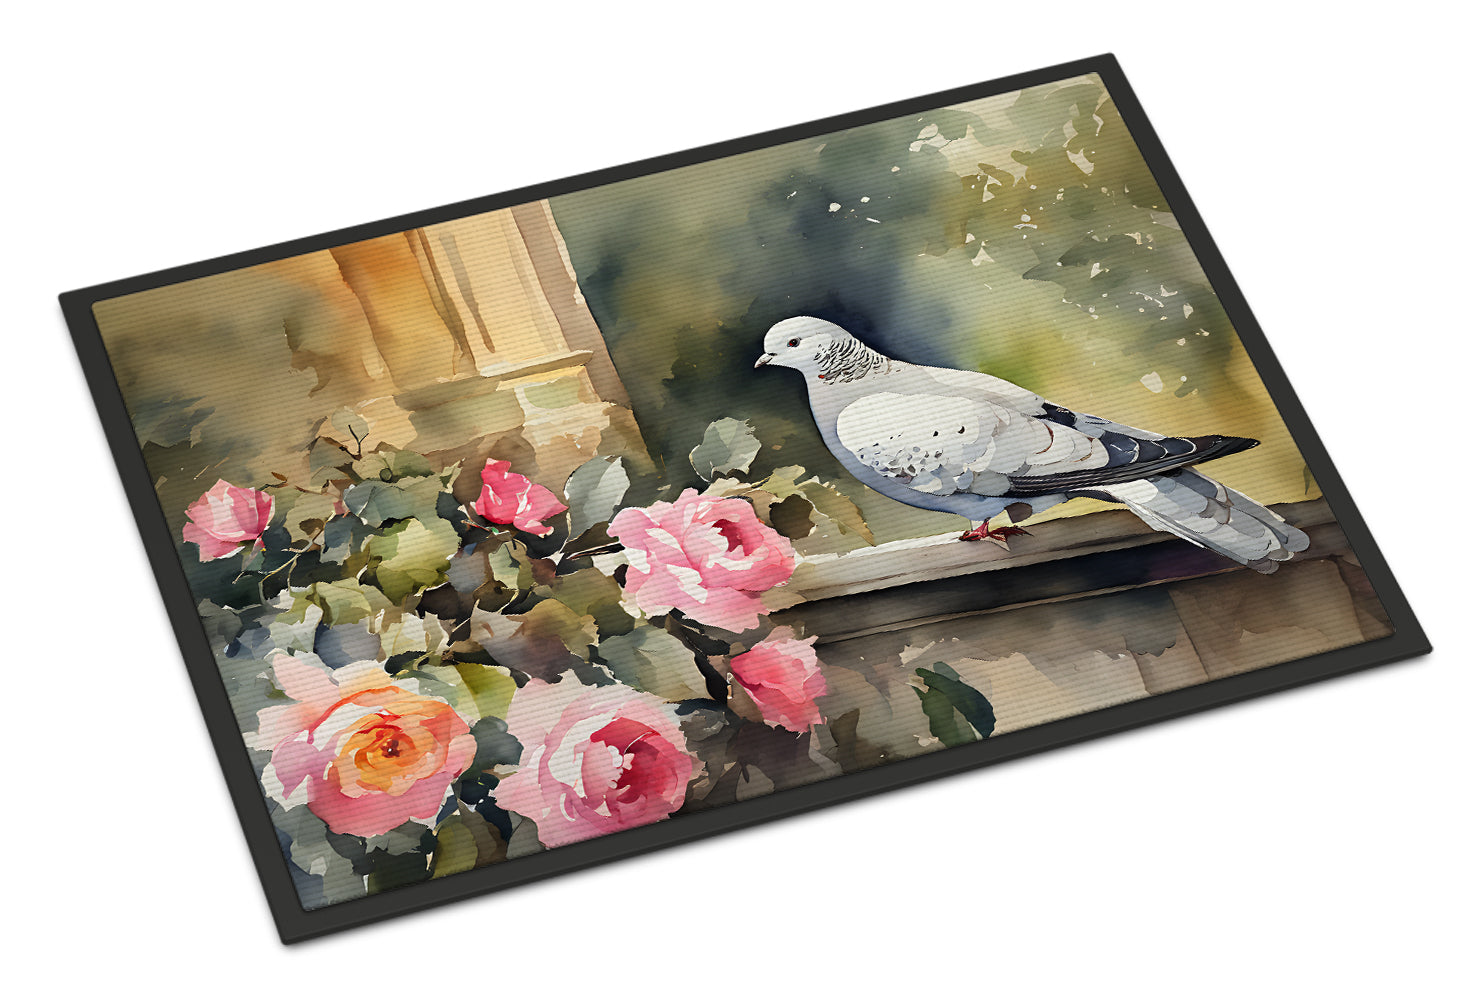 Buy this Pigeon Doormat